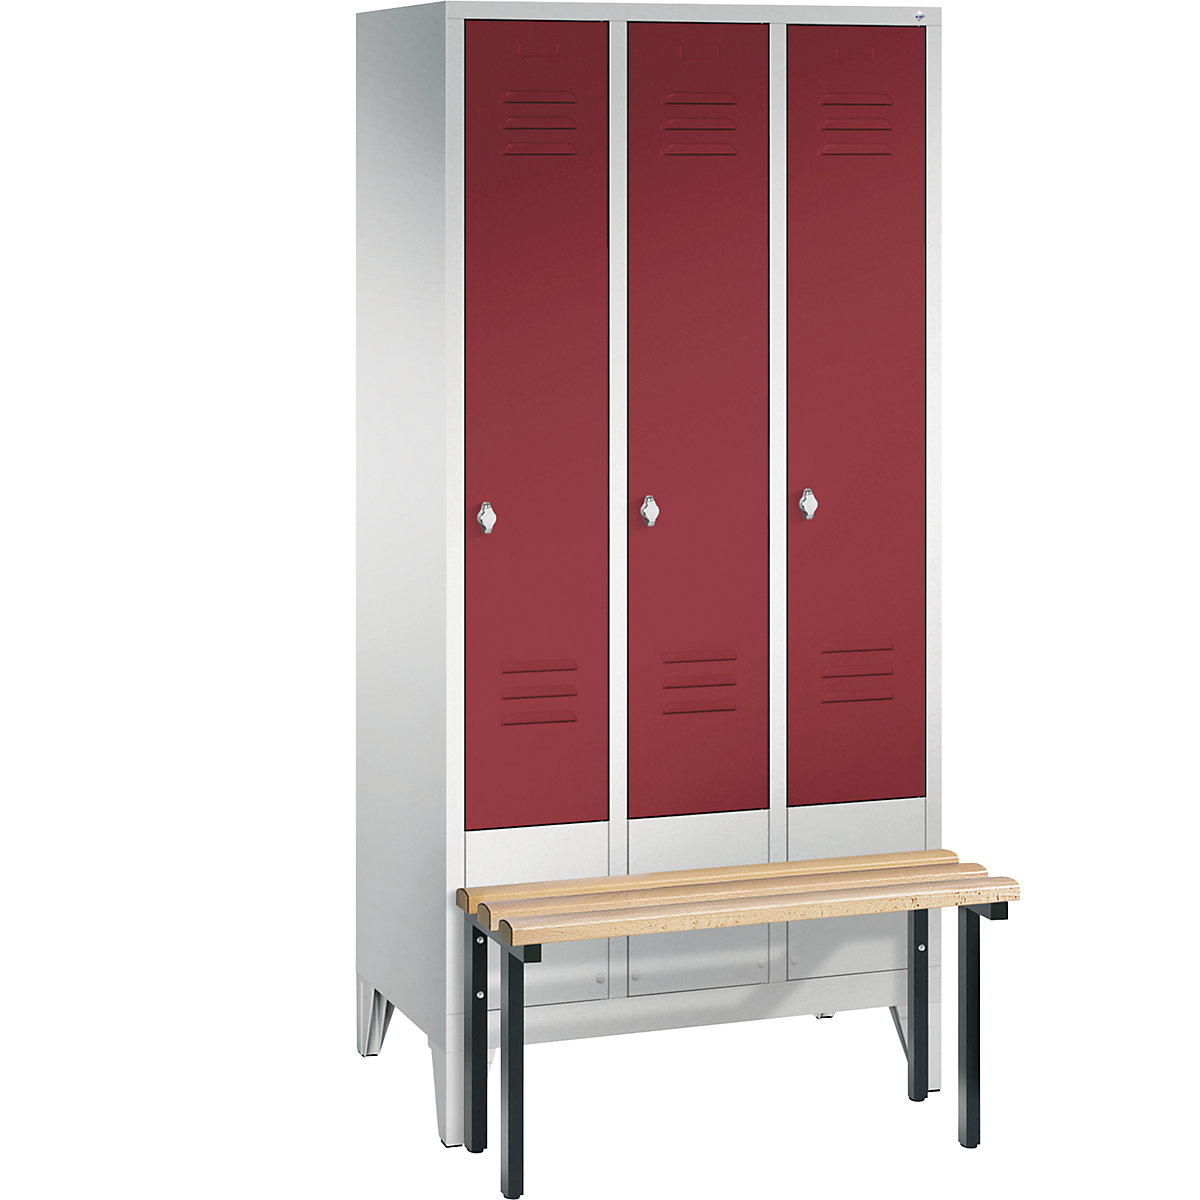 Garderobna omara CLASSIC s klopjo – C+P, 3 predelki, širina 300 mm/predelek, svetlo sive / rubinasto rdeče barve-10